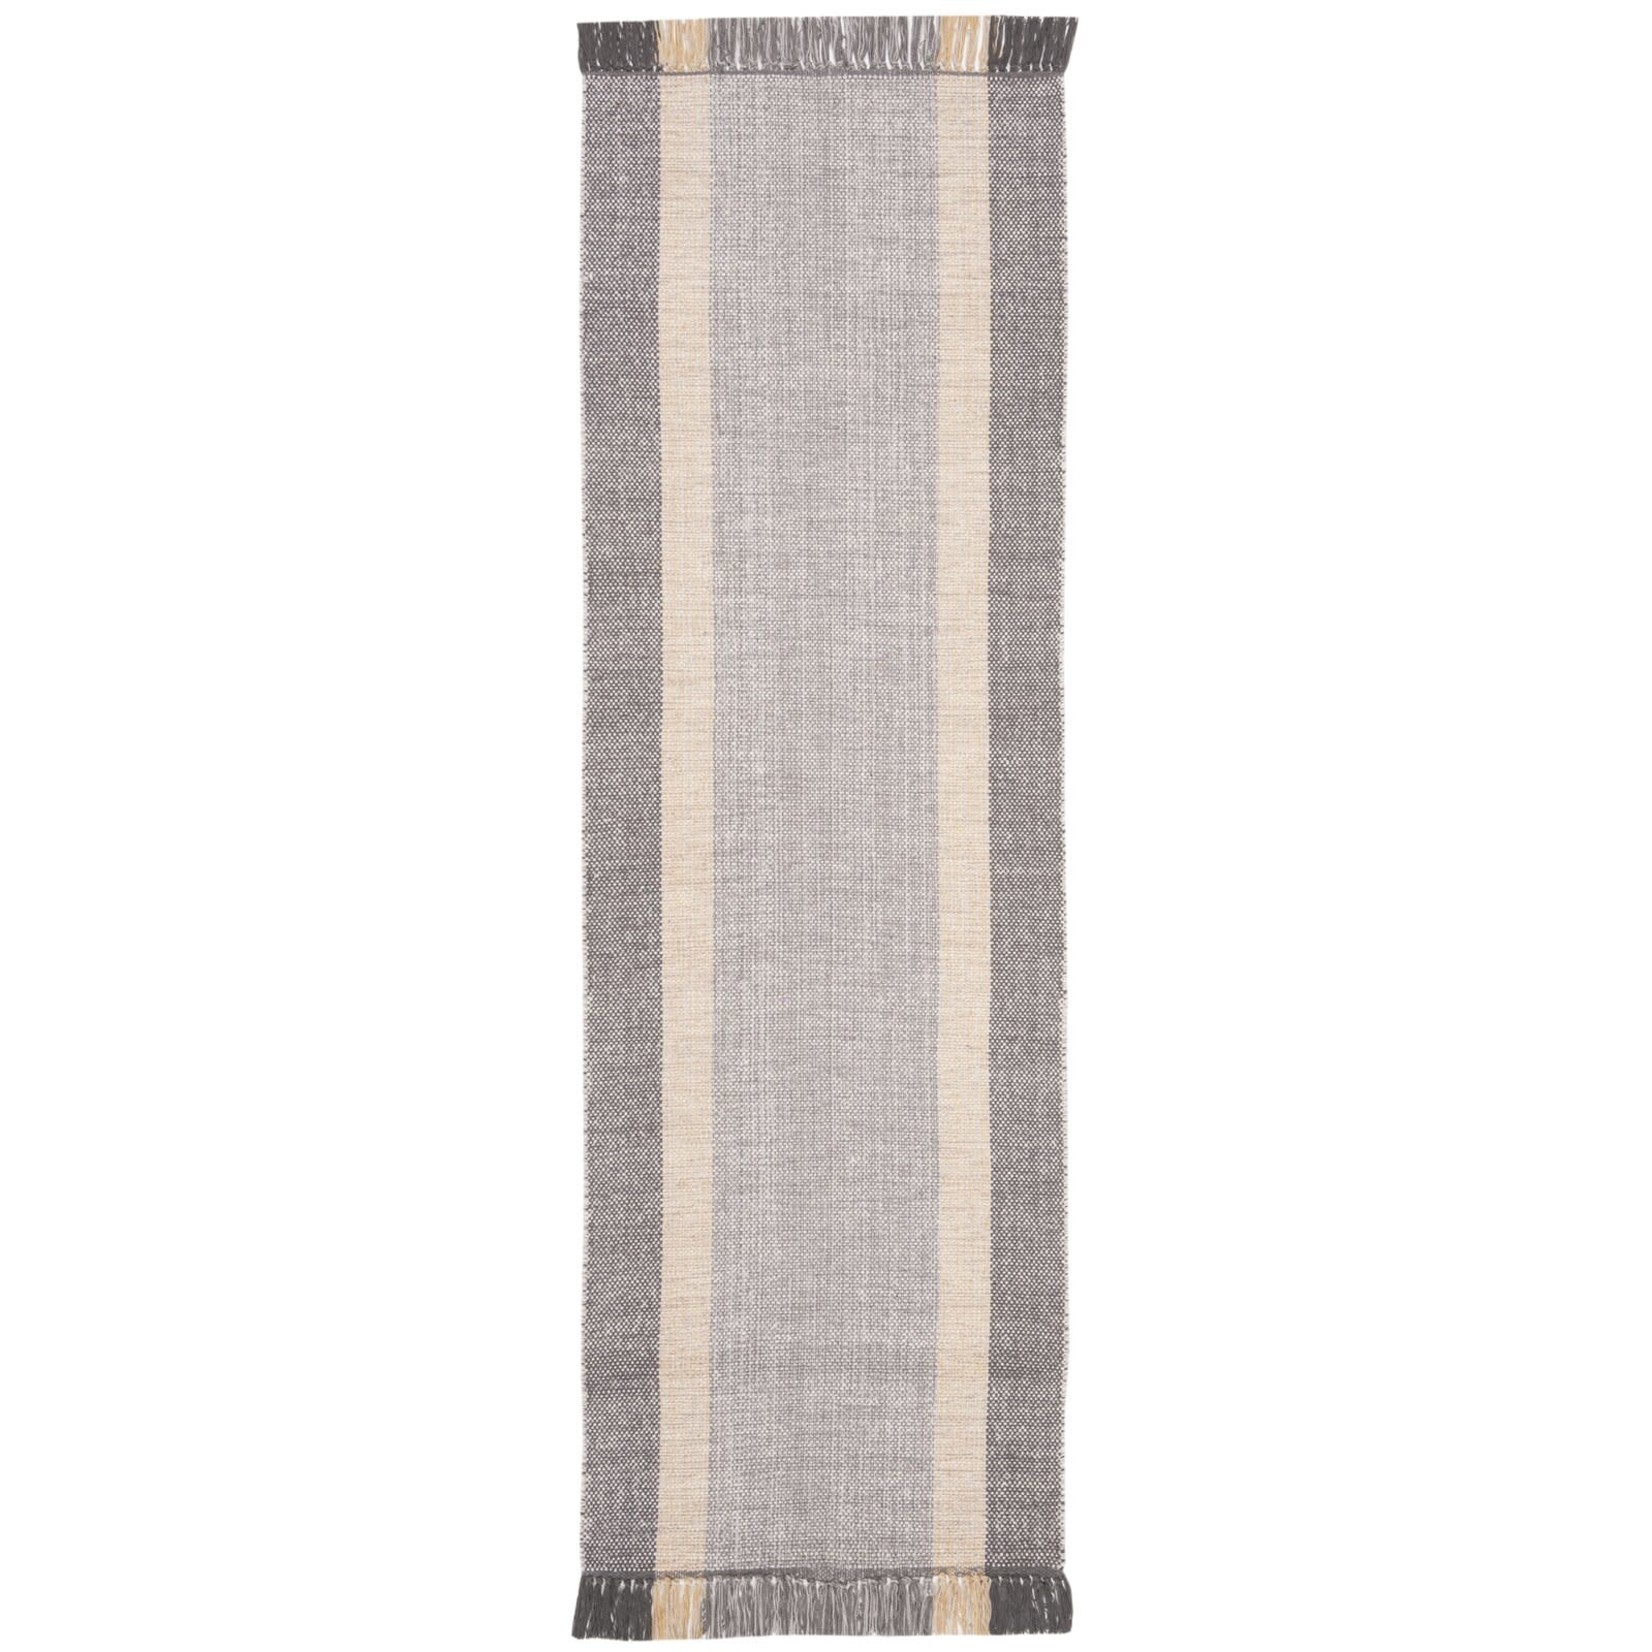 *2'3 x 7' Aitken Handmade Flatweave Cotton Gray/Beige Area Rug